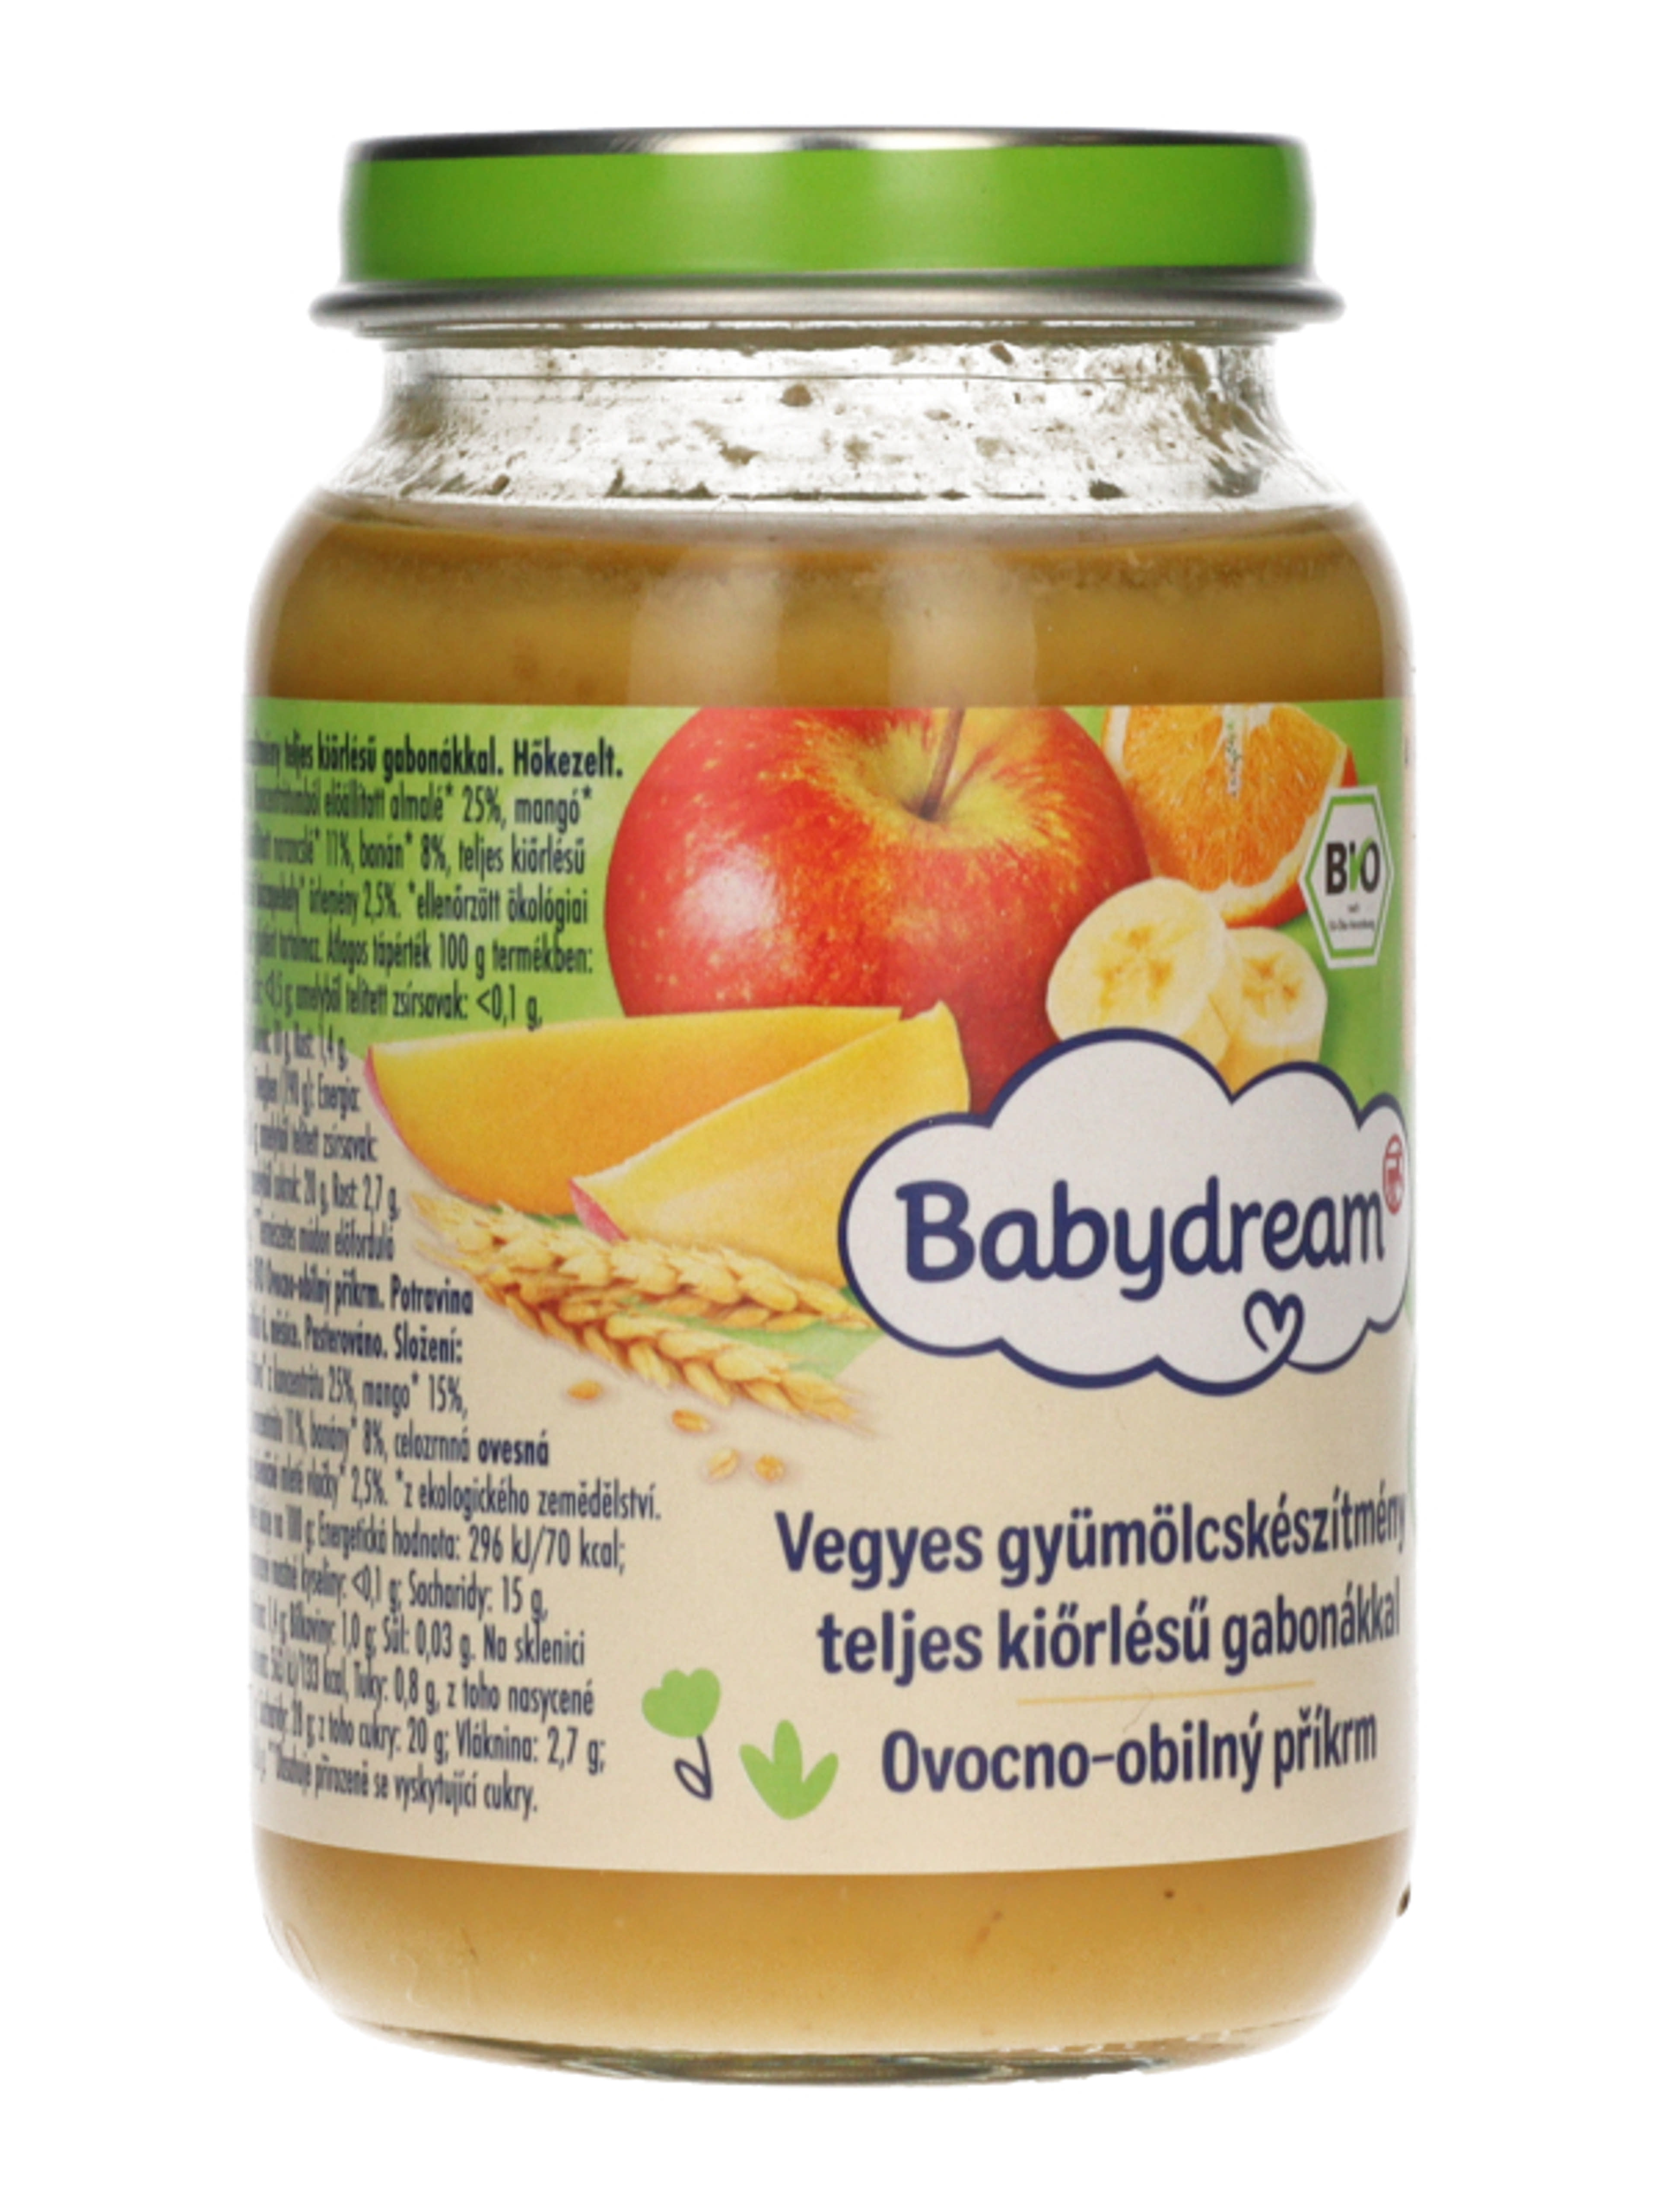 Babydream bébiétel vegyes gyümölcs gabona ízesítéssel - 190 g - 5 hónapos kortól ajánlott-4